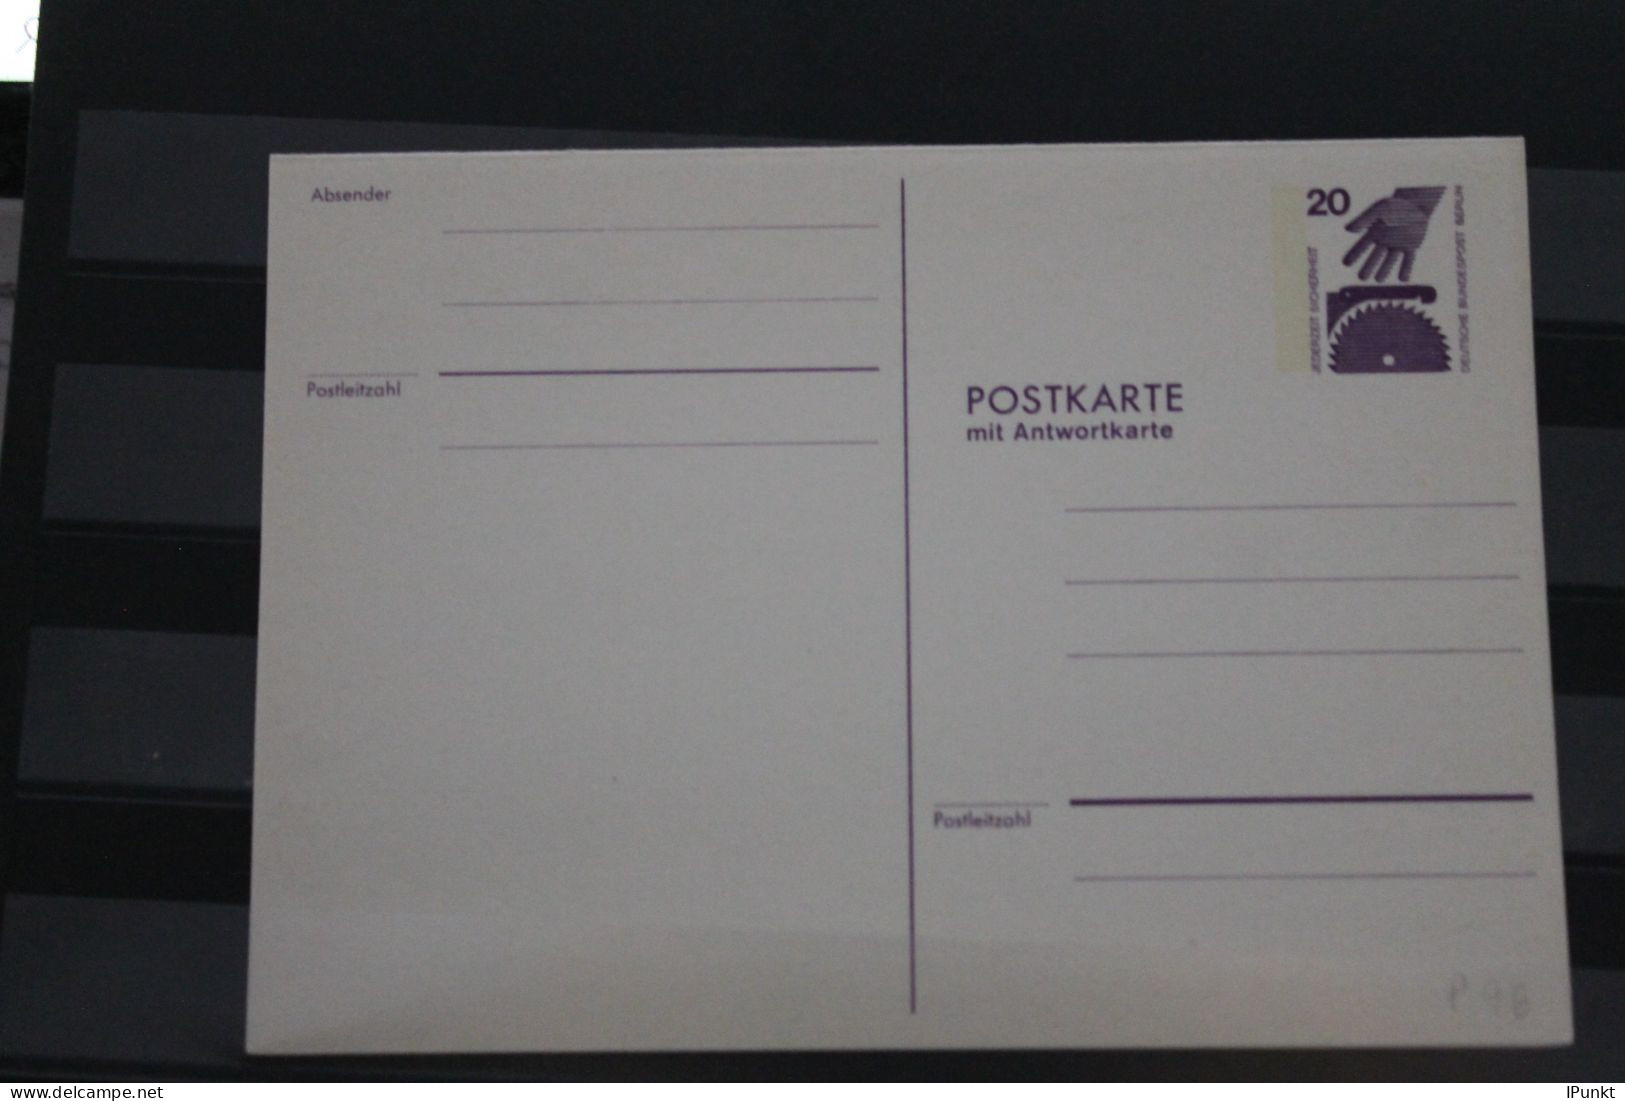 Berlin 1974; Ganzsache Unfallverhütung Postkarte Mit Antwortkarte   P 96; Ungebraucht - Cartoline - Nuovi